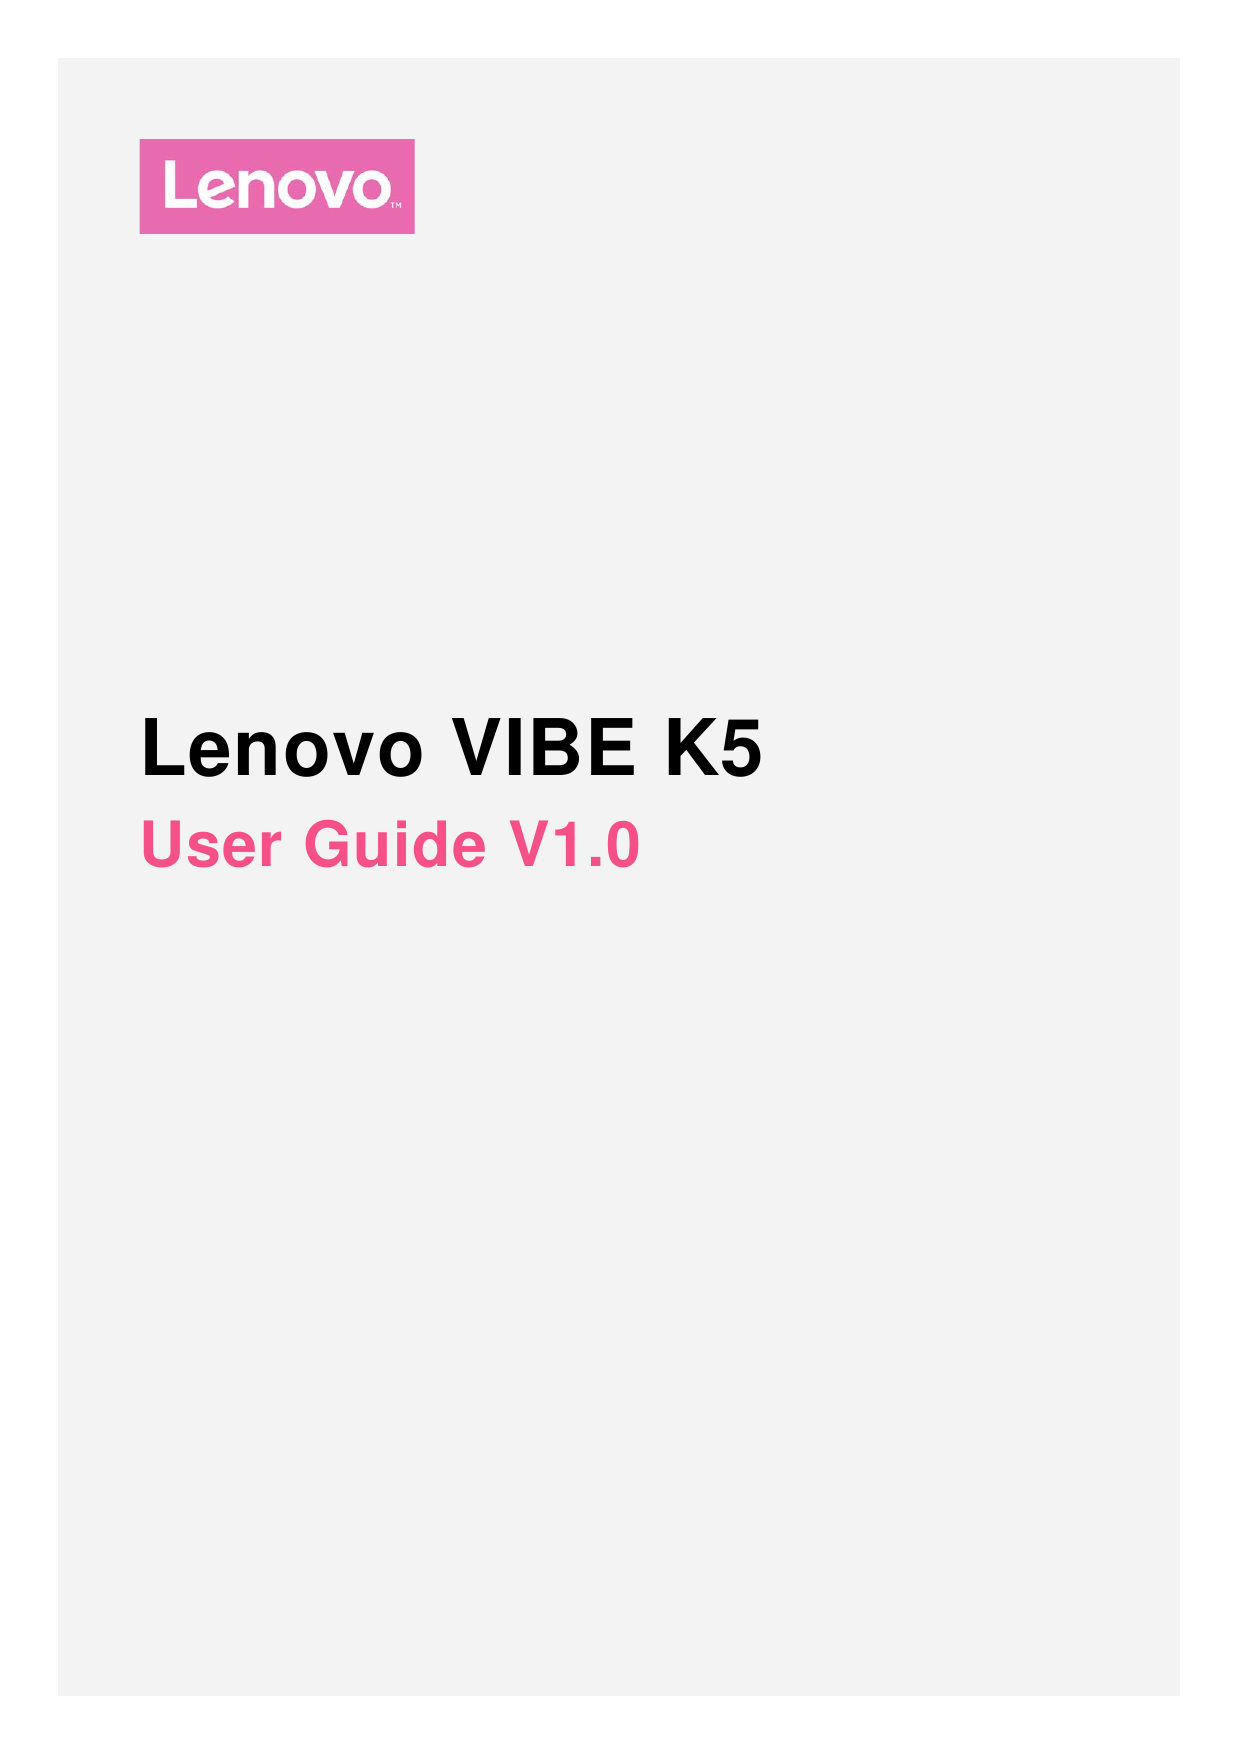 Lenovo VIBE K5User Guide V1.0